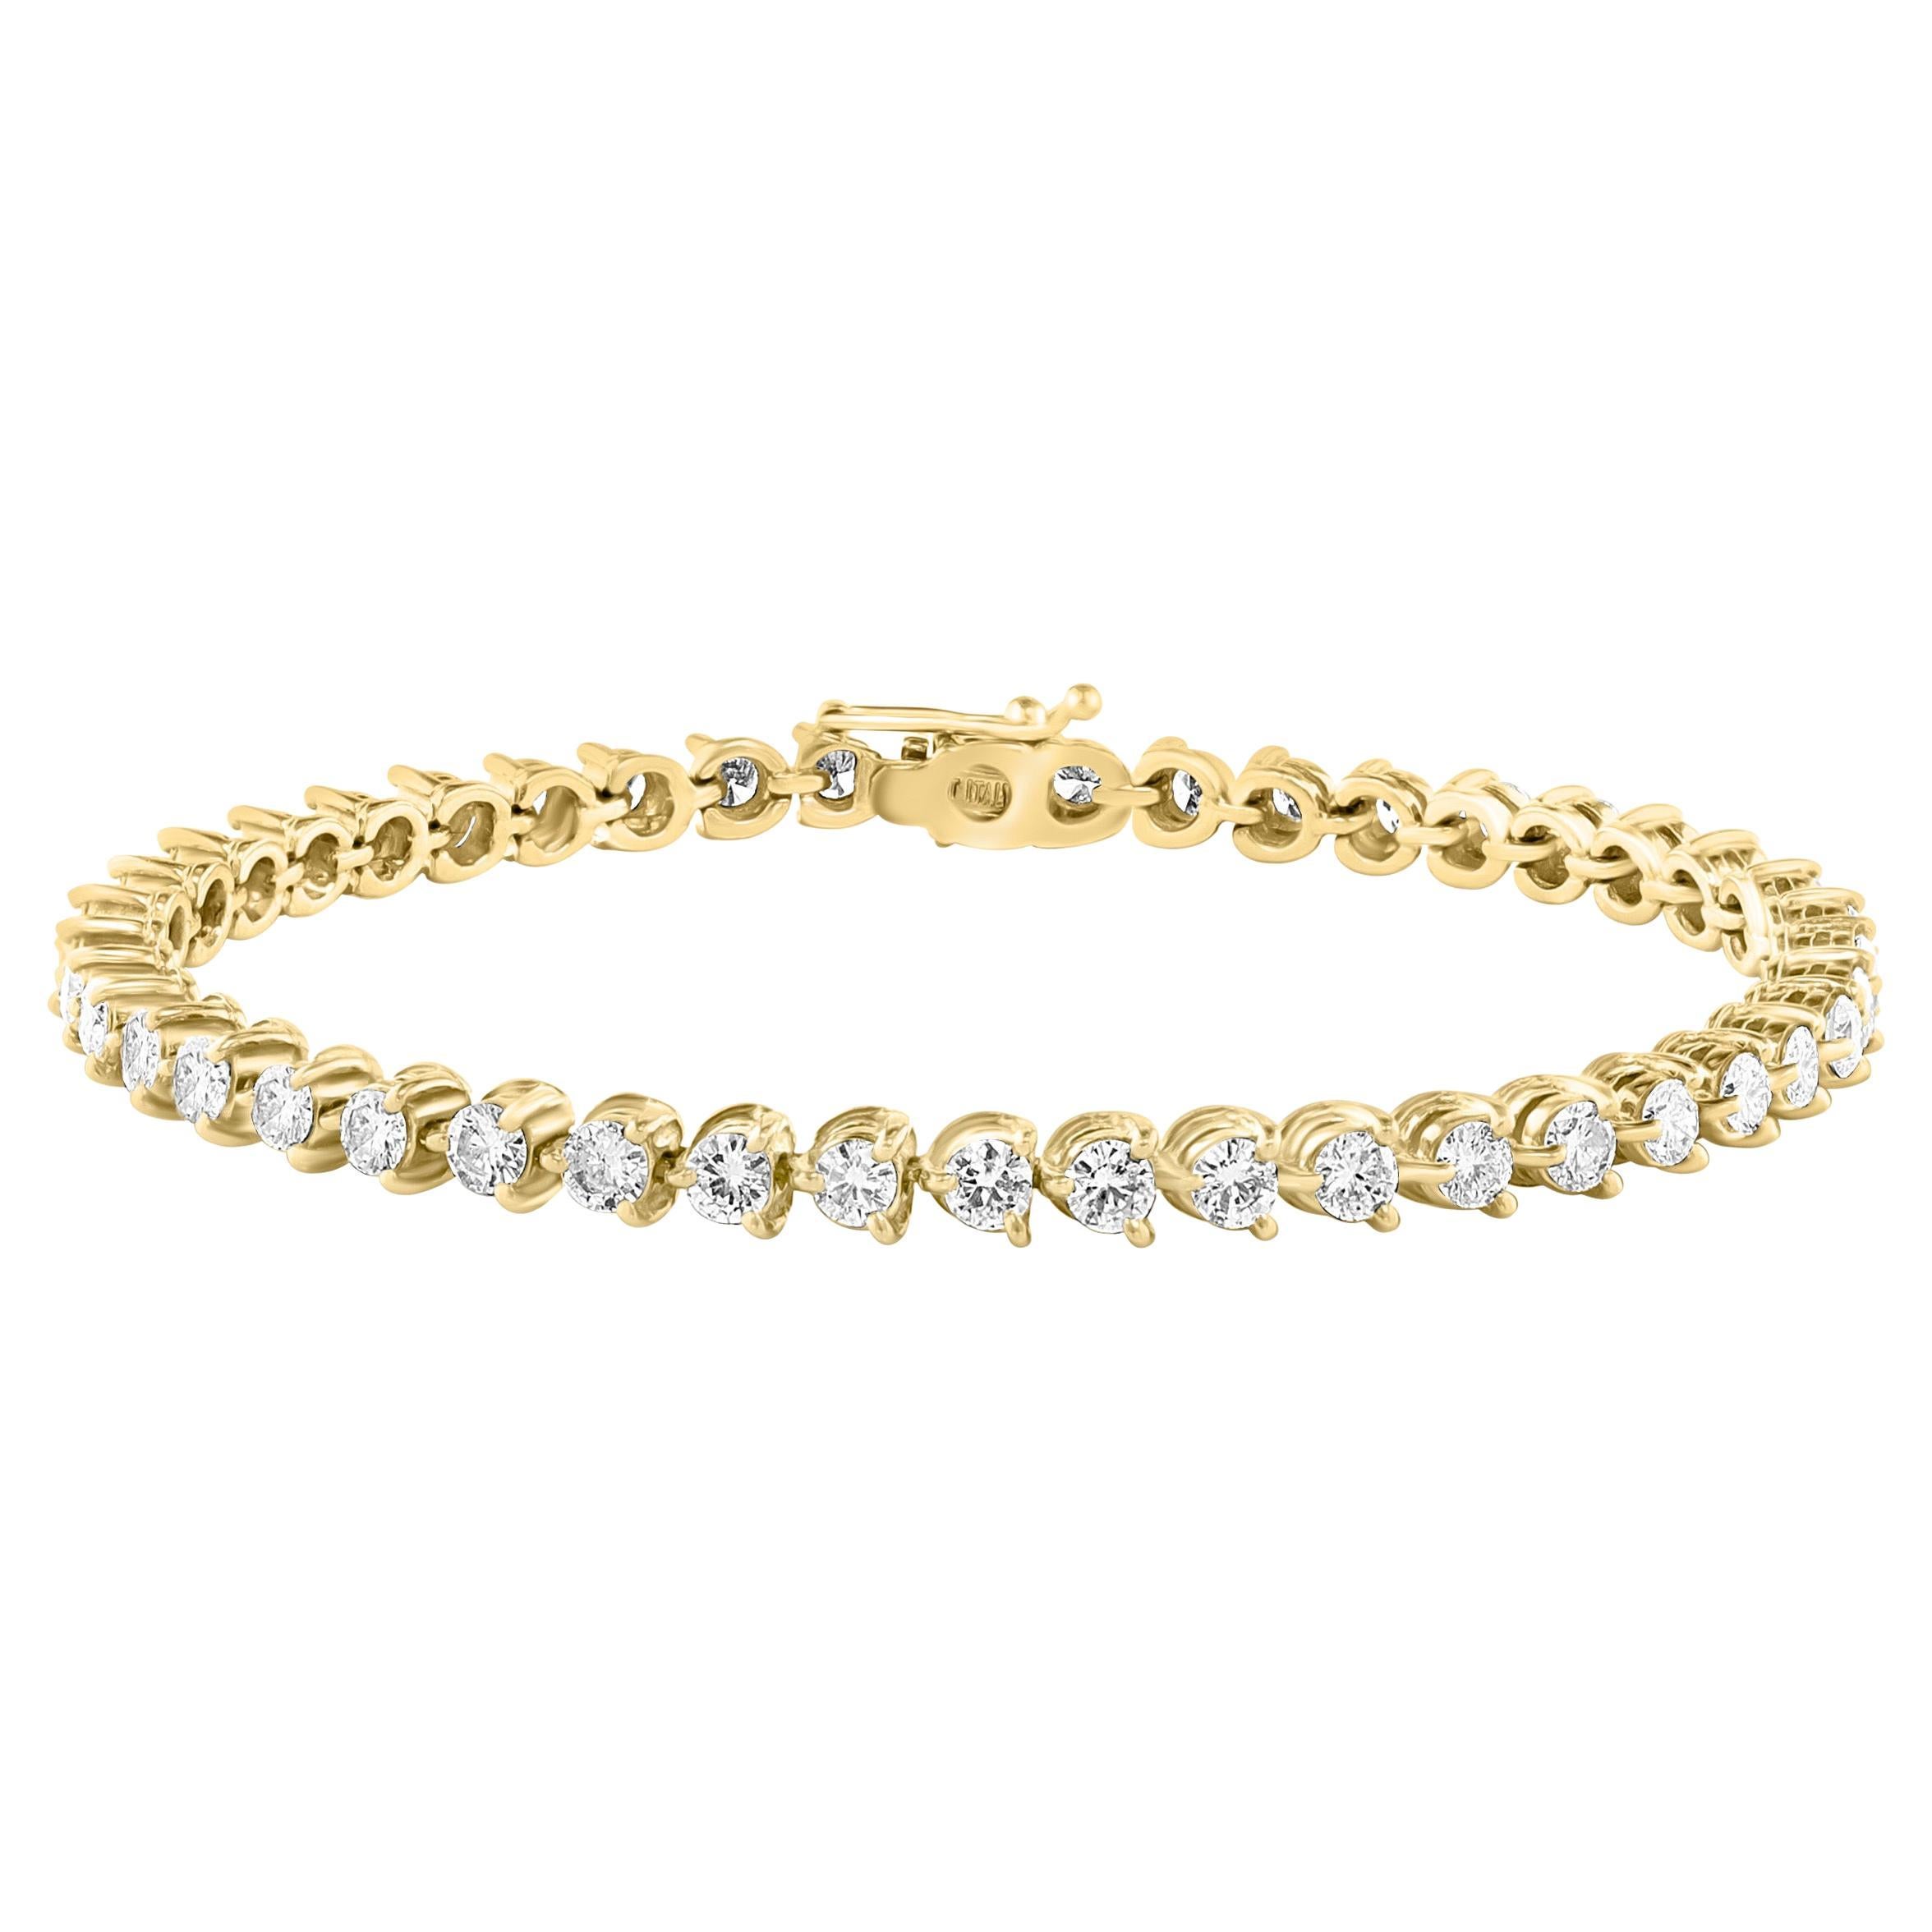 Bracelet tennis en or jaune 14 carats avec 44 diamants ronds de 10 à 12 pointes chacun